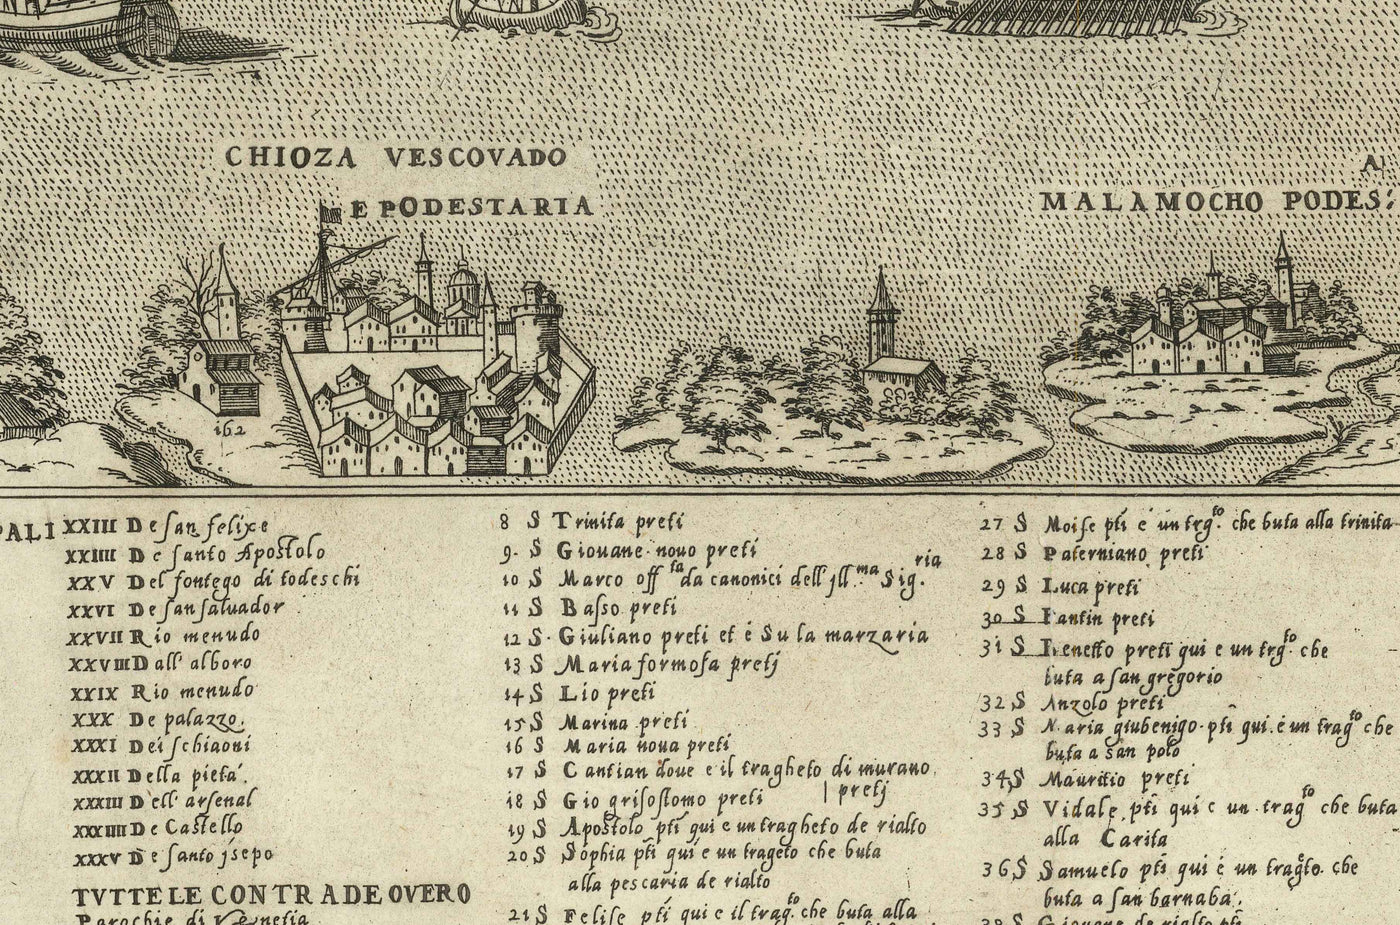 Rare Old Map of Venice, 1570 by Claudio Duchetti - San Giorgio Maggiore, Giudecca, Grand Canal, Merchant Ships